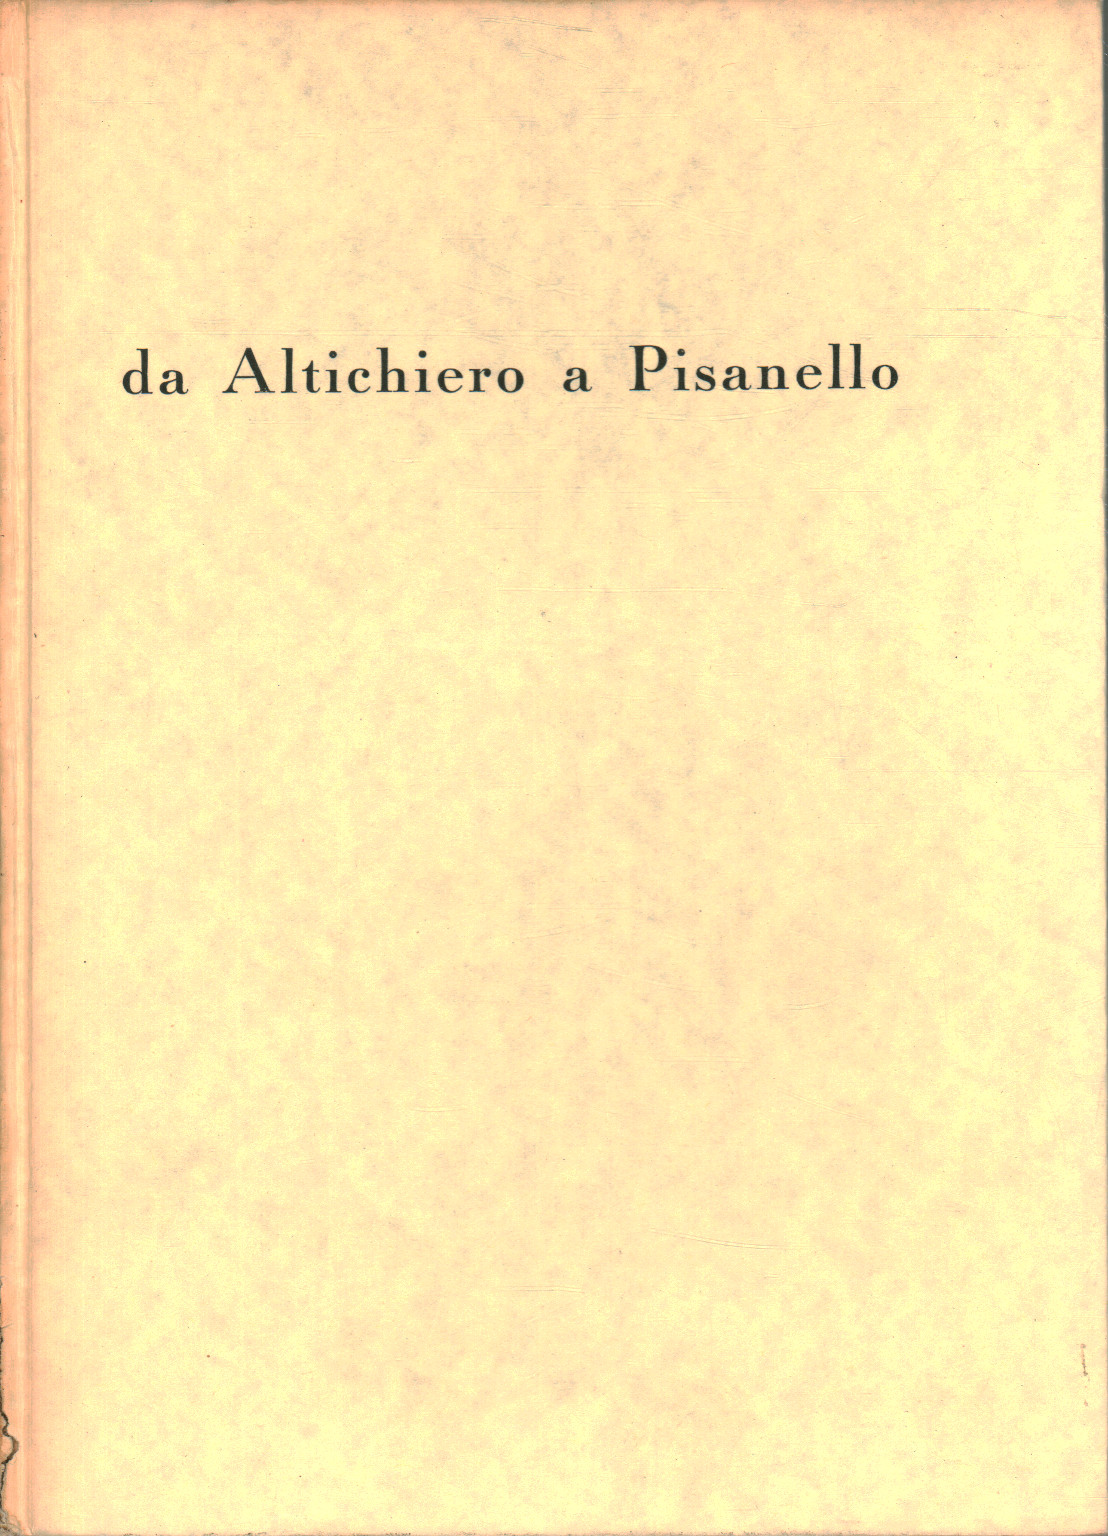 Altichiero Da un Pisanello, s.un.